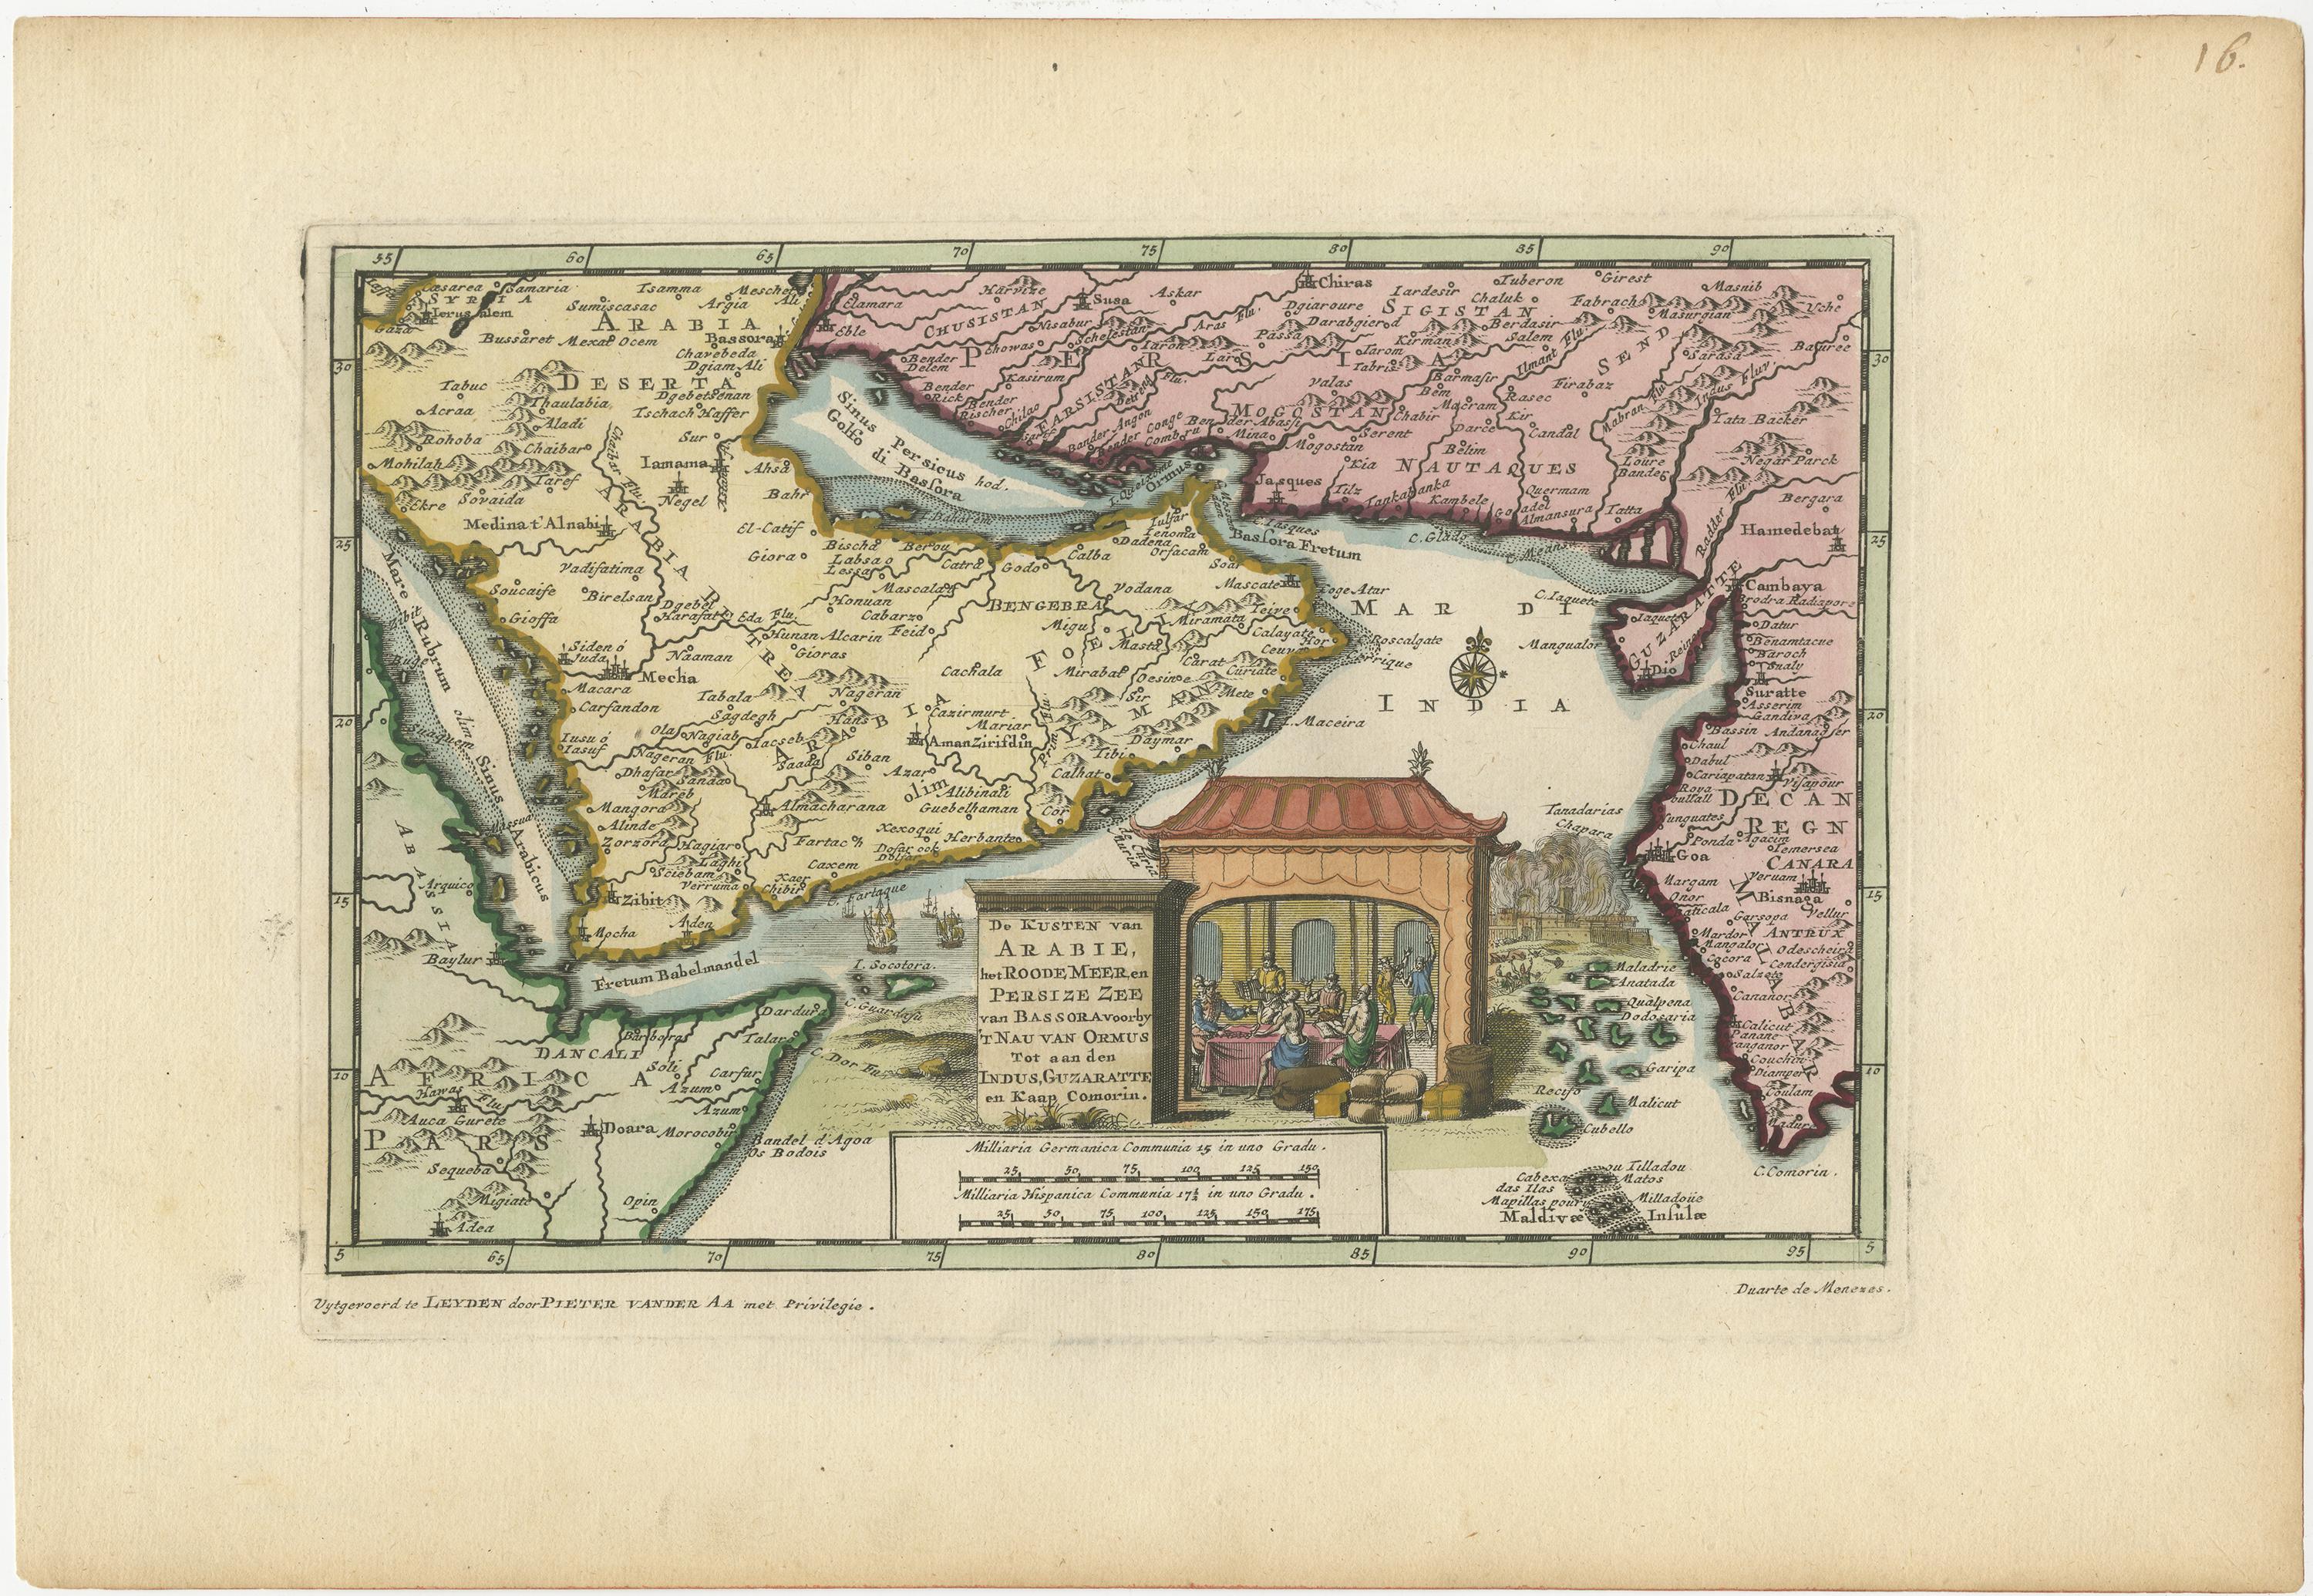 Wunderschöne kleine Karte, die die Küsten von Arabien, Persien und Westindien abdeckt. Es illustriert die Reisen von Duarte de Menezes, der Vizekönig von Portugal-Indien wurde. Van der Aas Karten waren typisch für die Kartografie der damaligen Zeit,